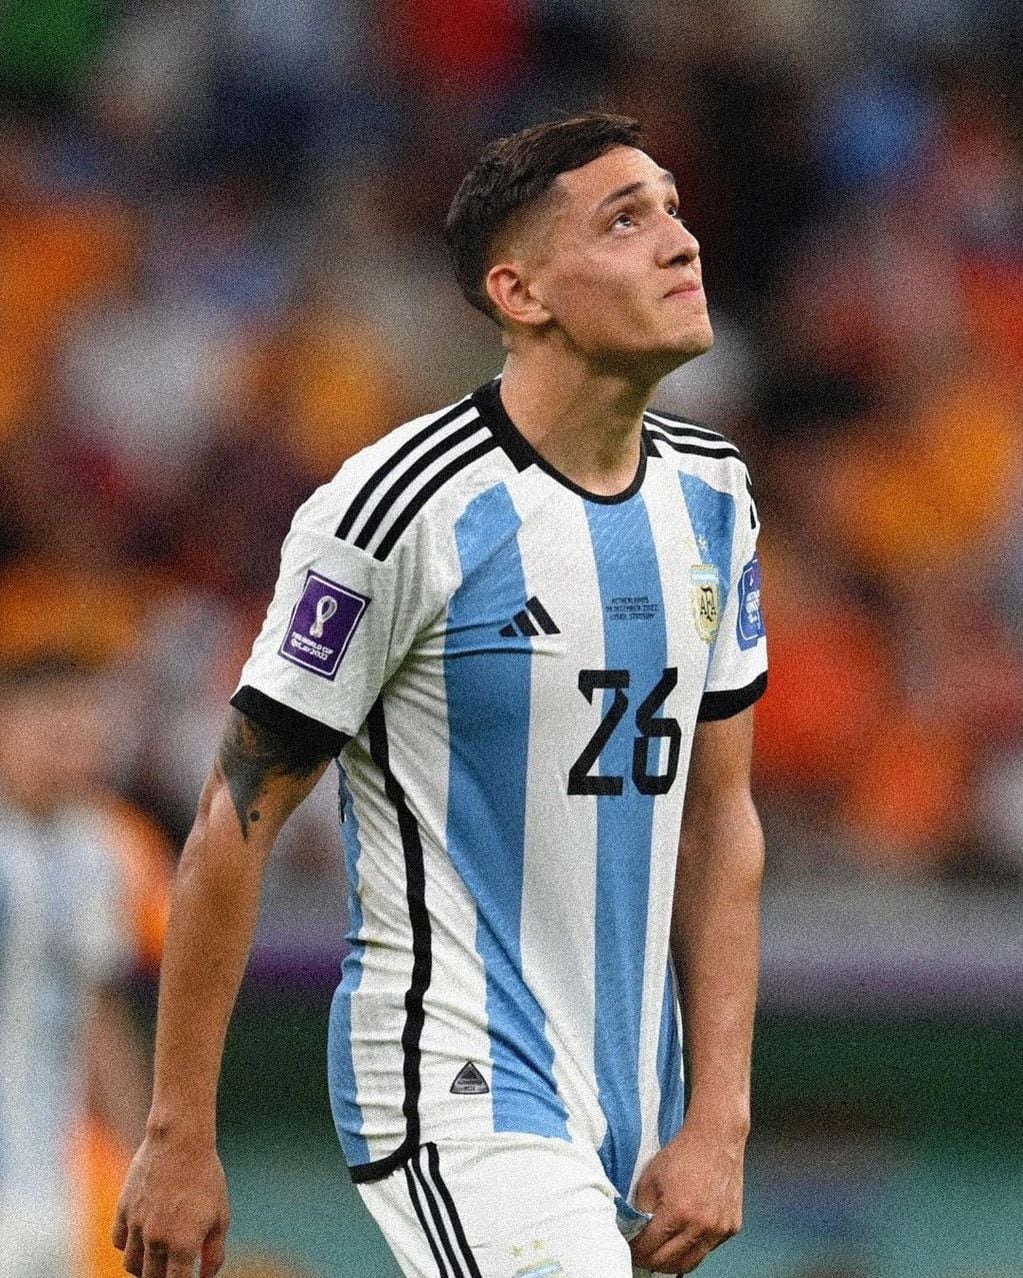 La emoción de Molina tras anotar su primer gol en un Mundial.